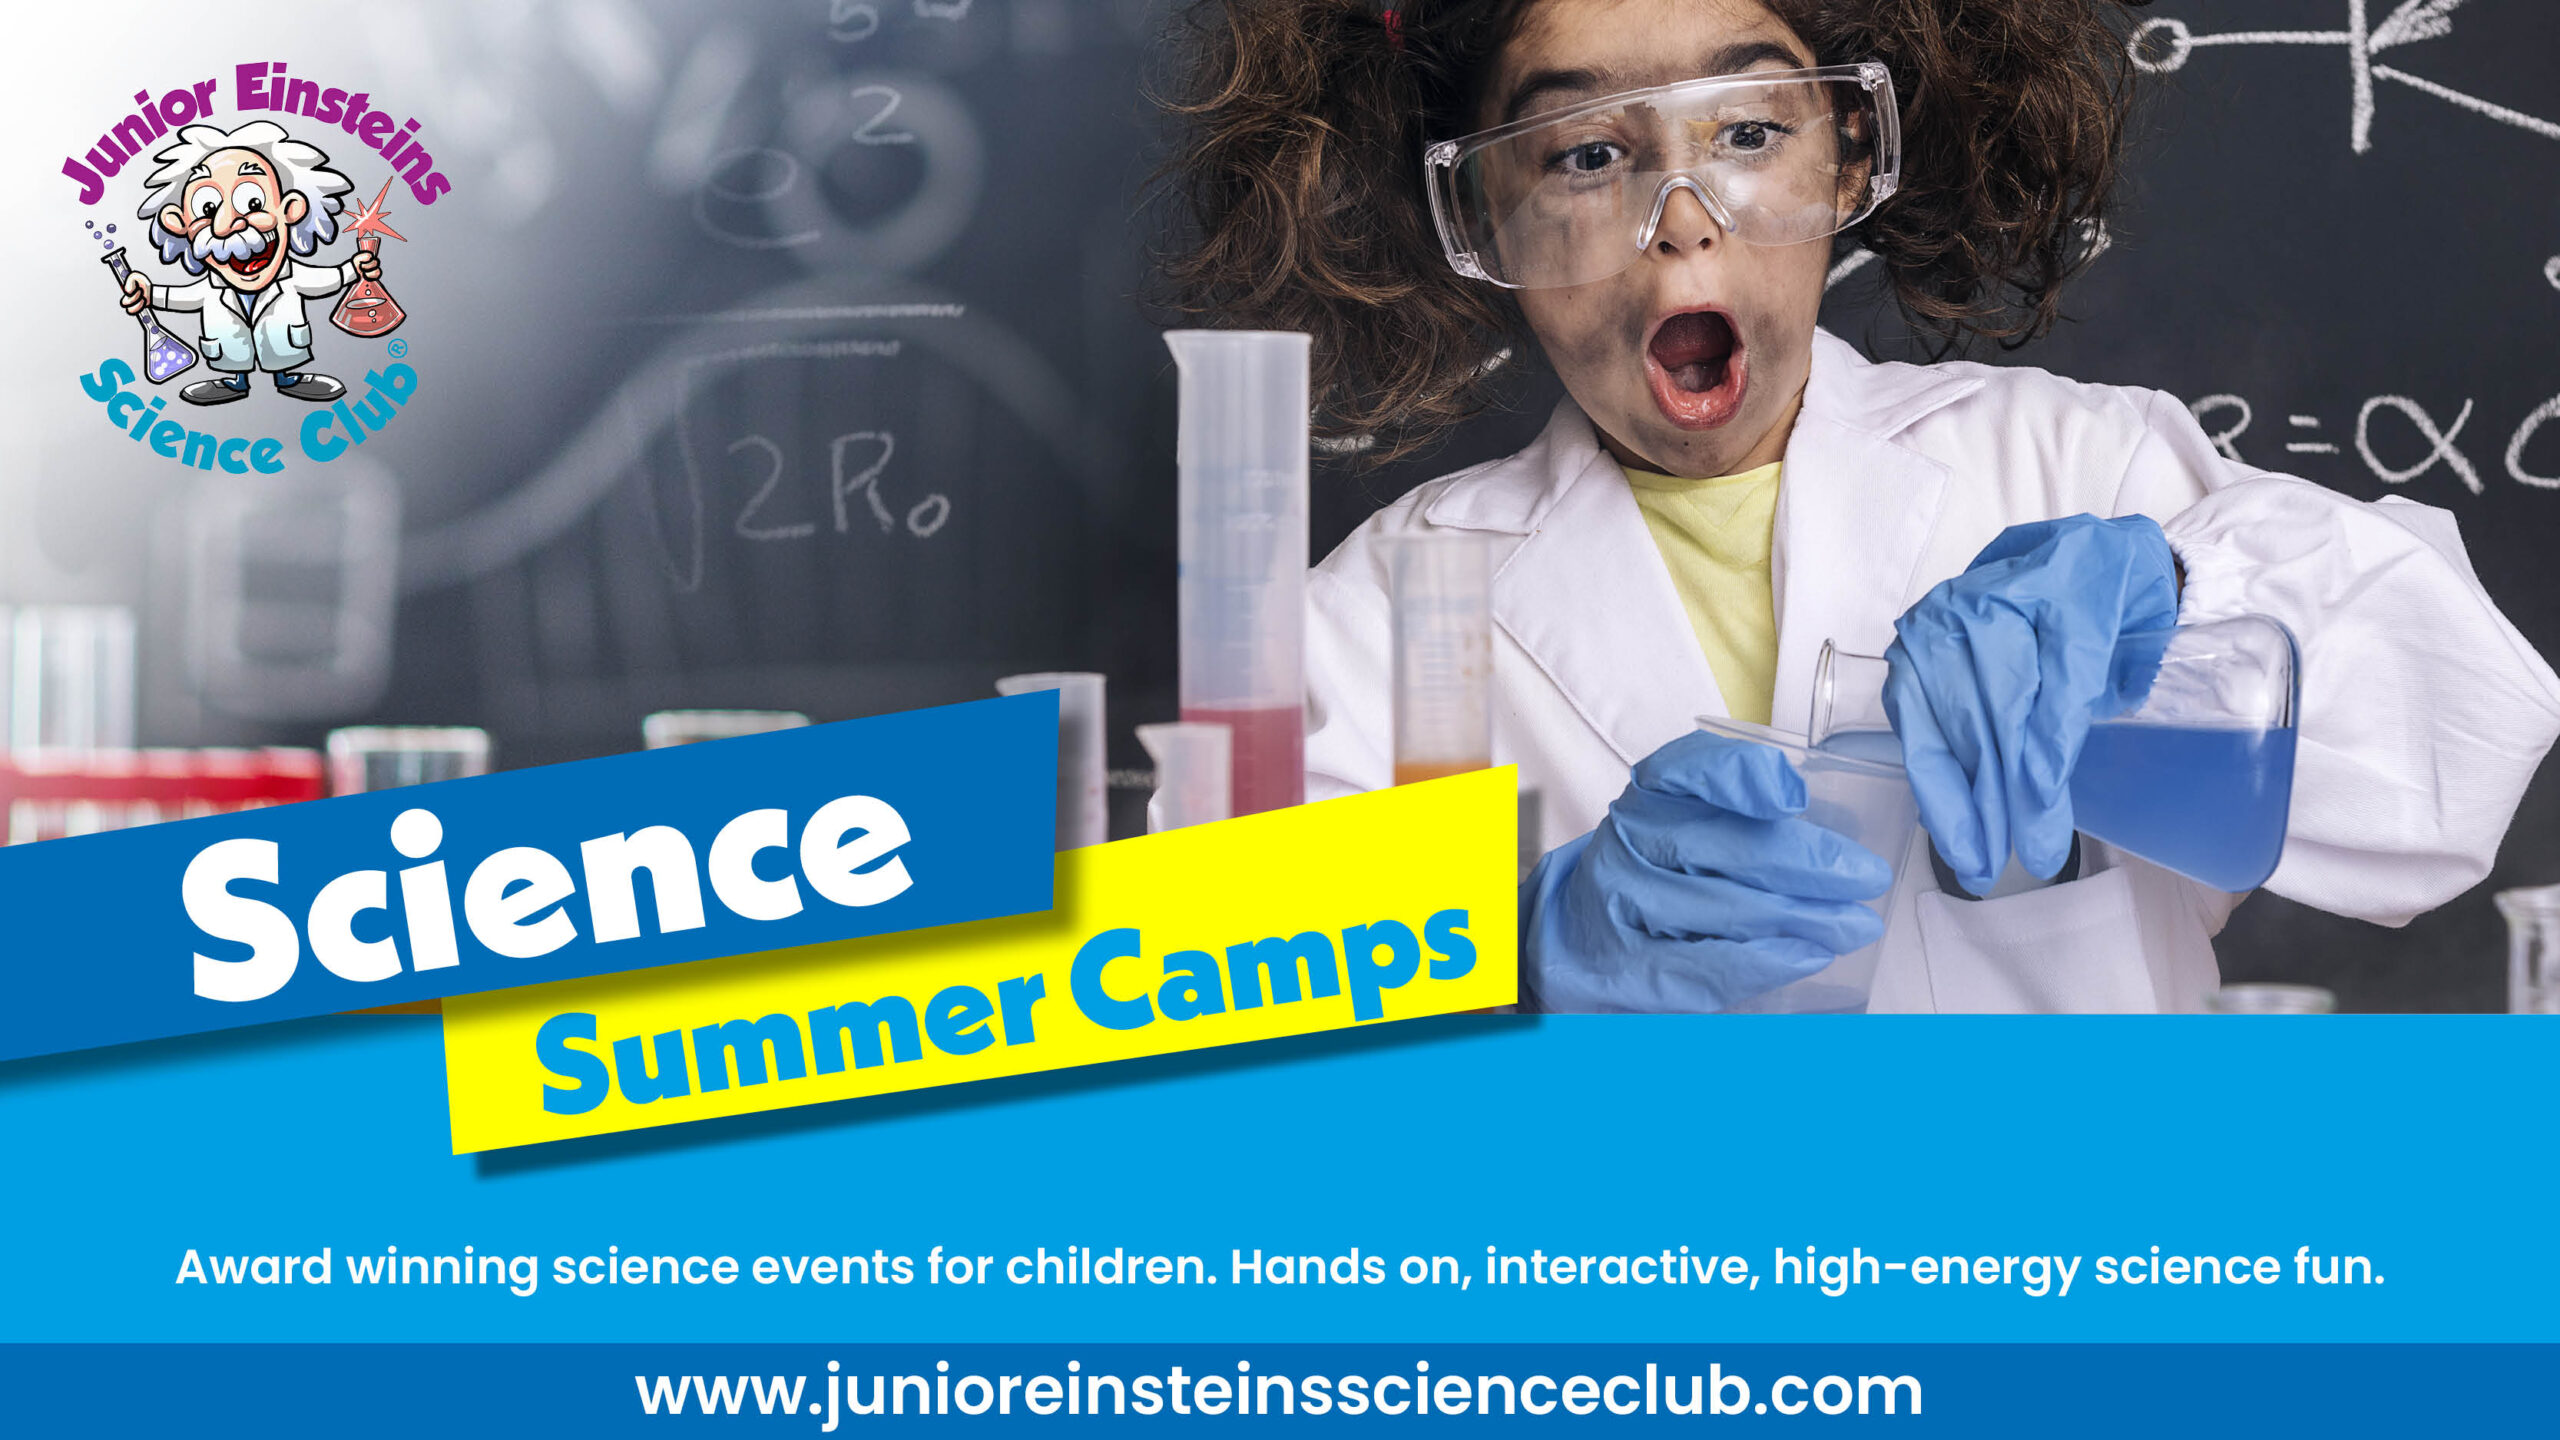 Last Chance to Enrol Your Child in Junior Einsteins Science Summer Camp